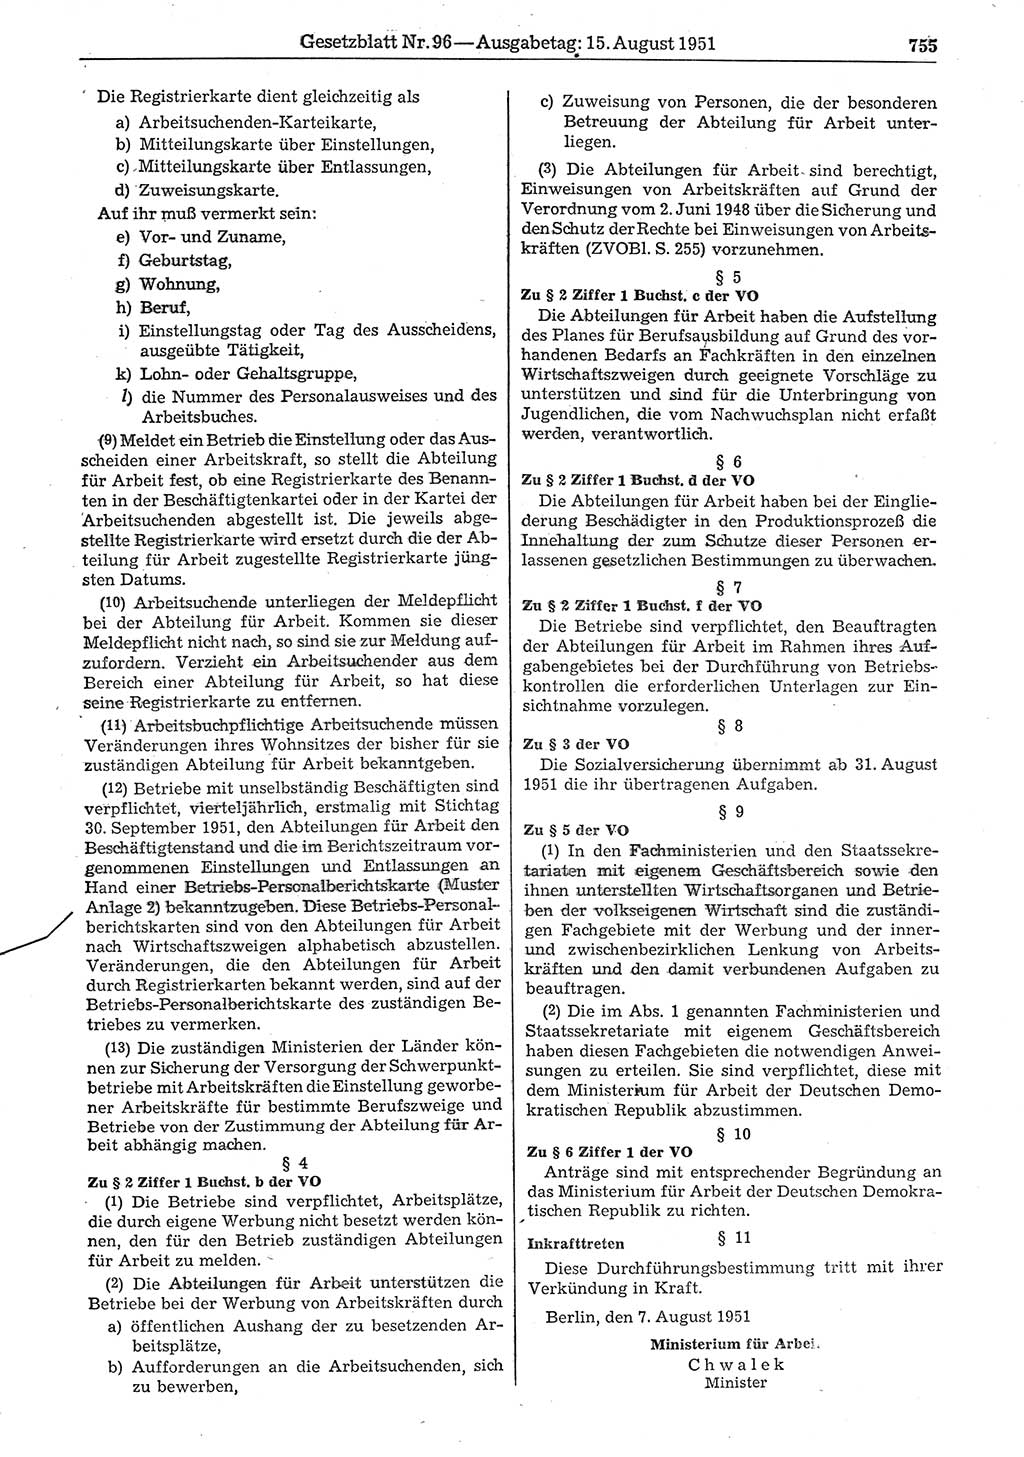 Gesetzblatt (GBl.) der Deutschen Demokratischen Republik (DDR) 1951, Seite 755 (GBl. DDR 1951, S. 755)